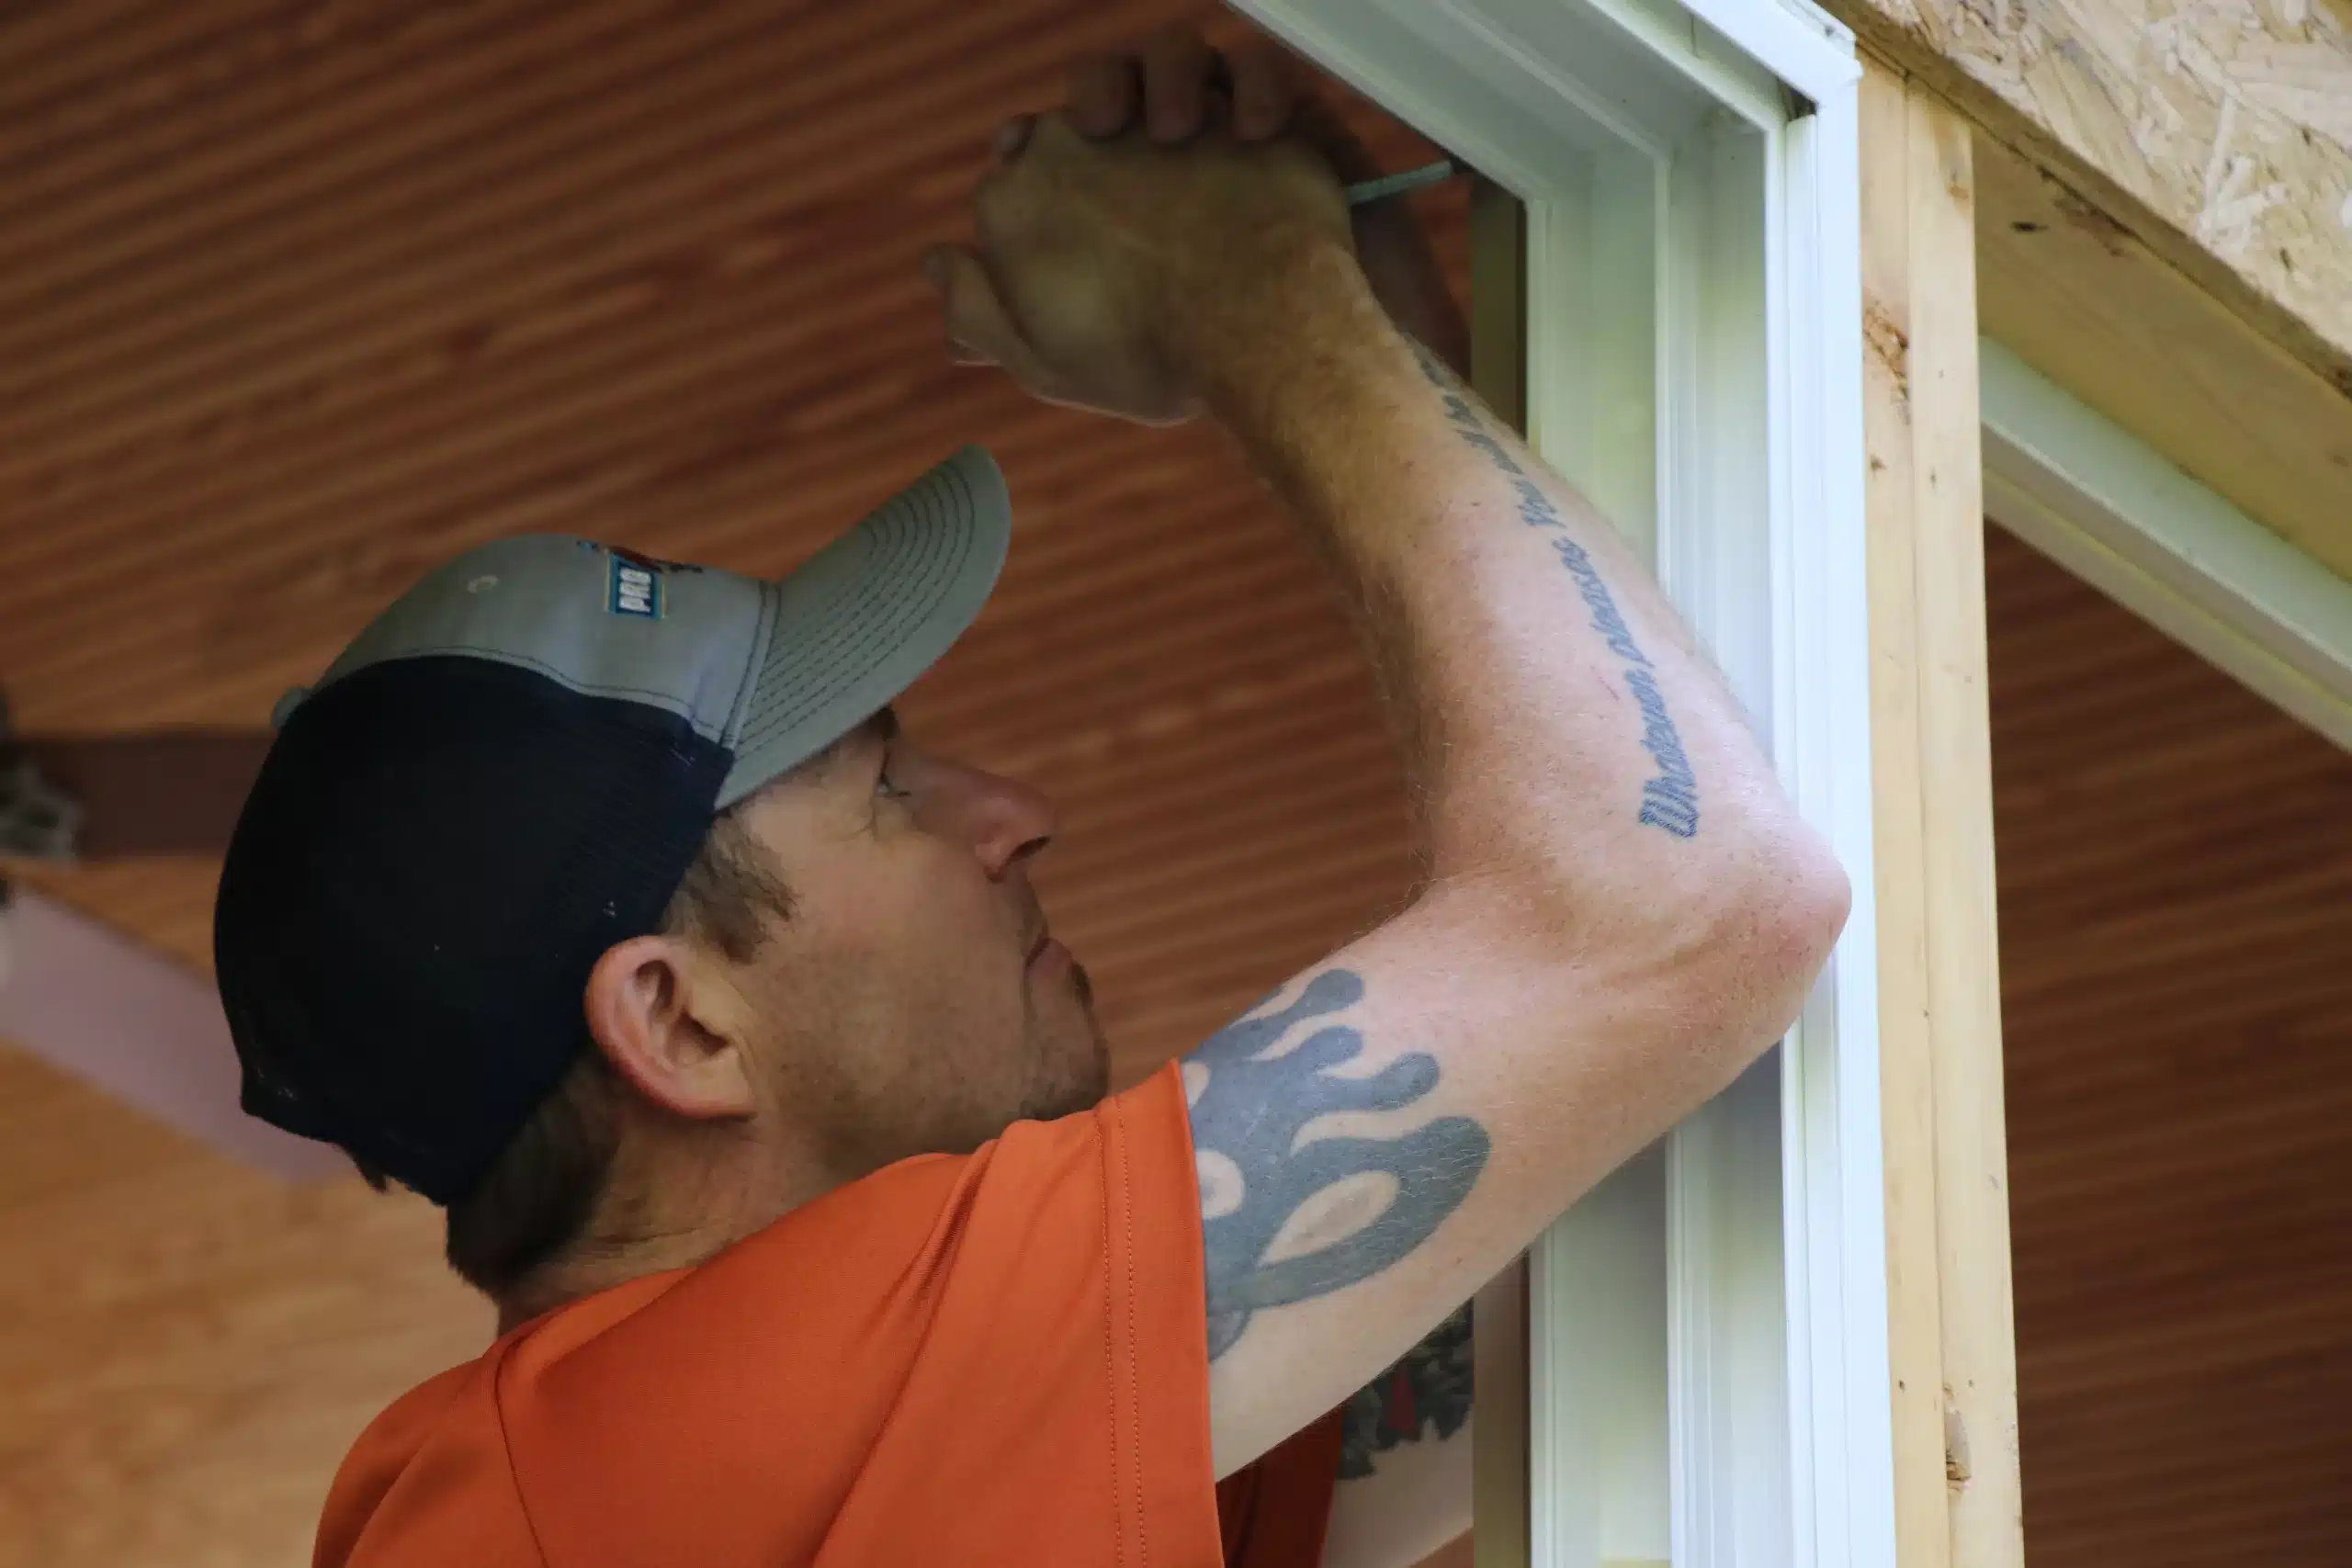 ProMaster craftsman performing Cincinnati door repair and window repair.